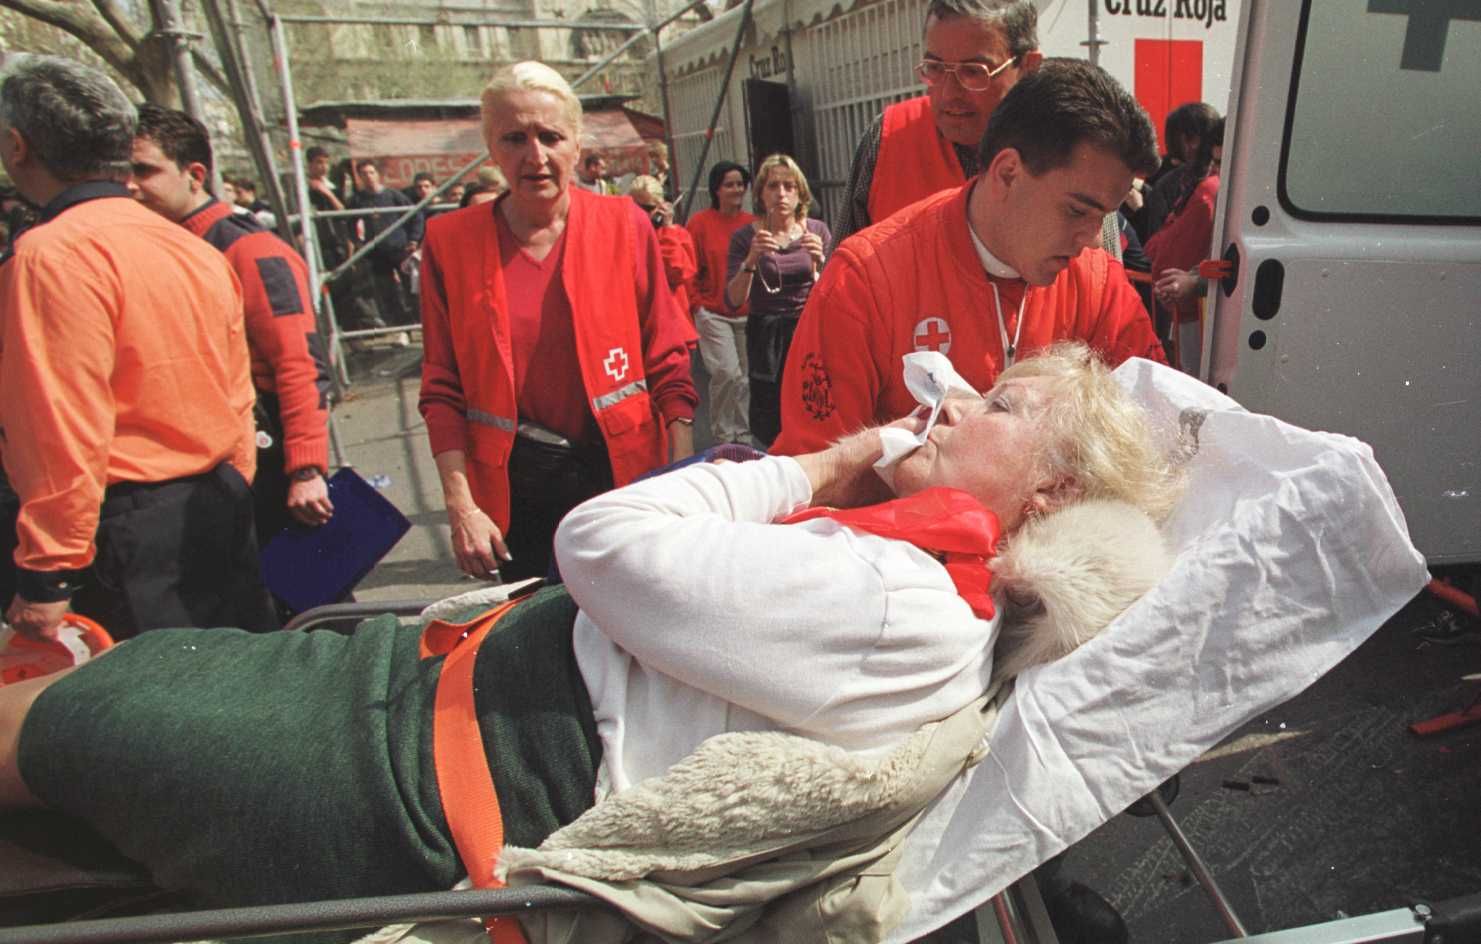 El accidente de la mascletà en el año 2000 dejó medio centenar de heridos